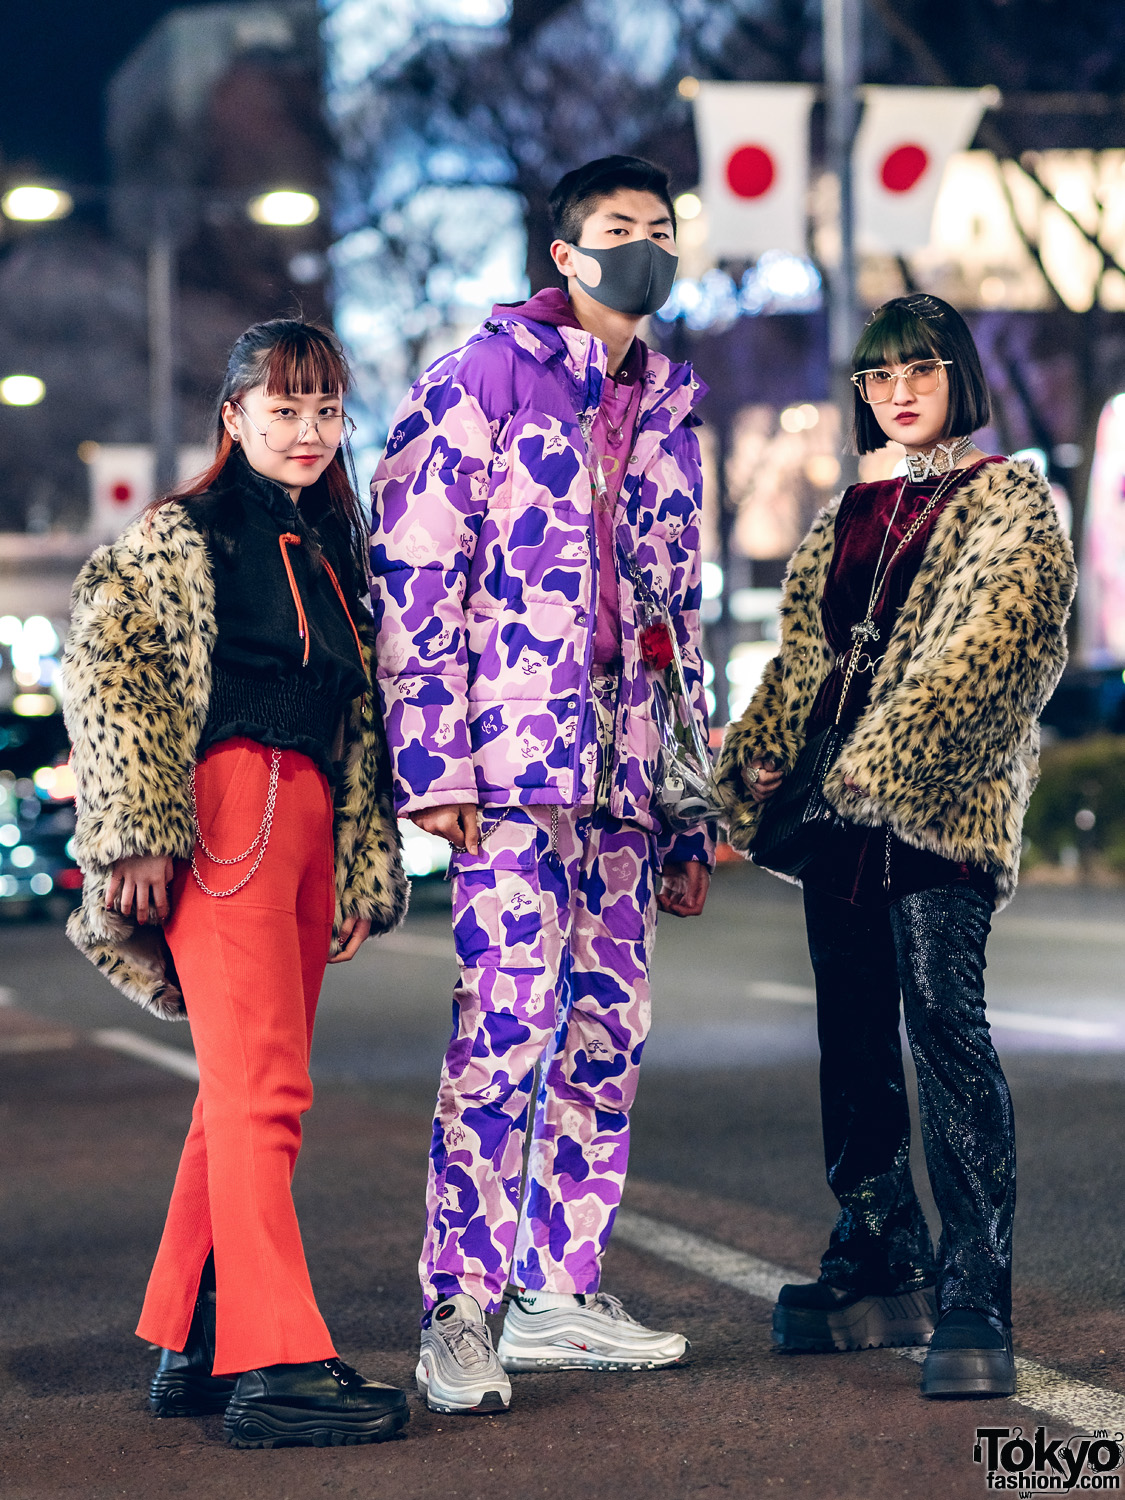 Harajuku Teens Streetwear Styles w/ Ripndip Cat Camo Print, WEGO Leopard Print Fur Jackets, MYOB, Jeanasis, FR2, Demonia, Nike & Romantic Standard